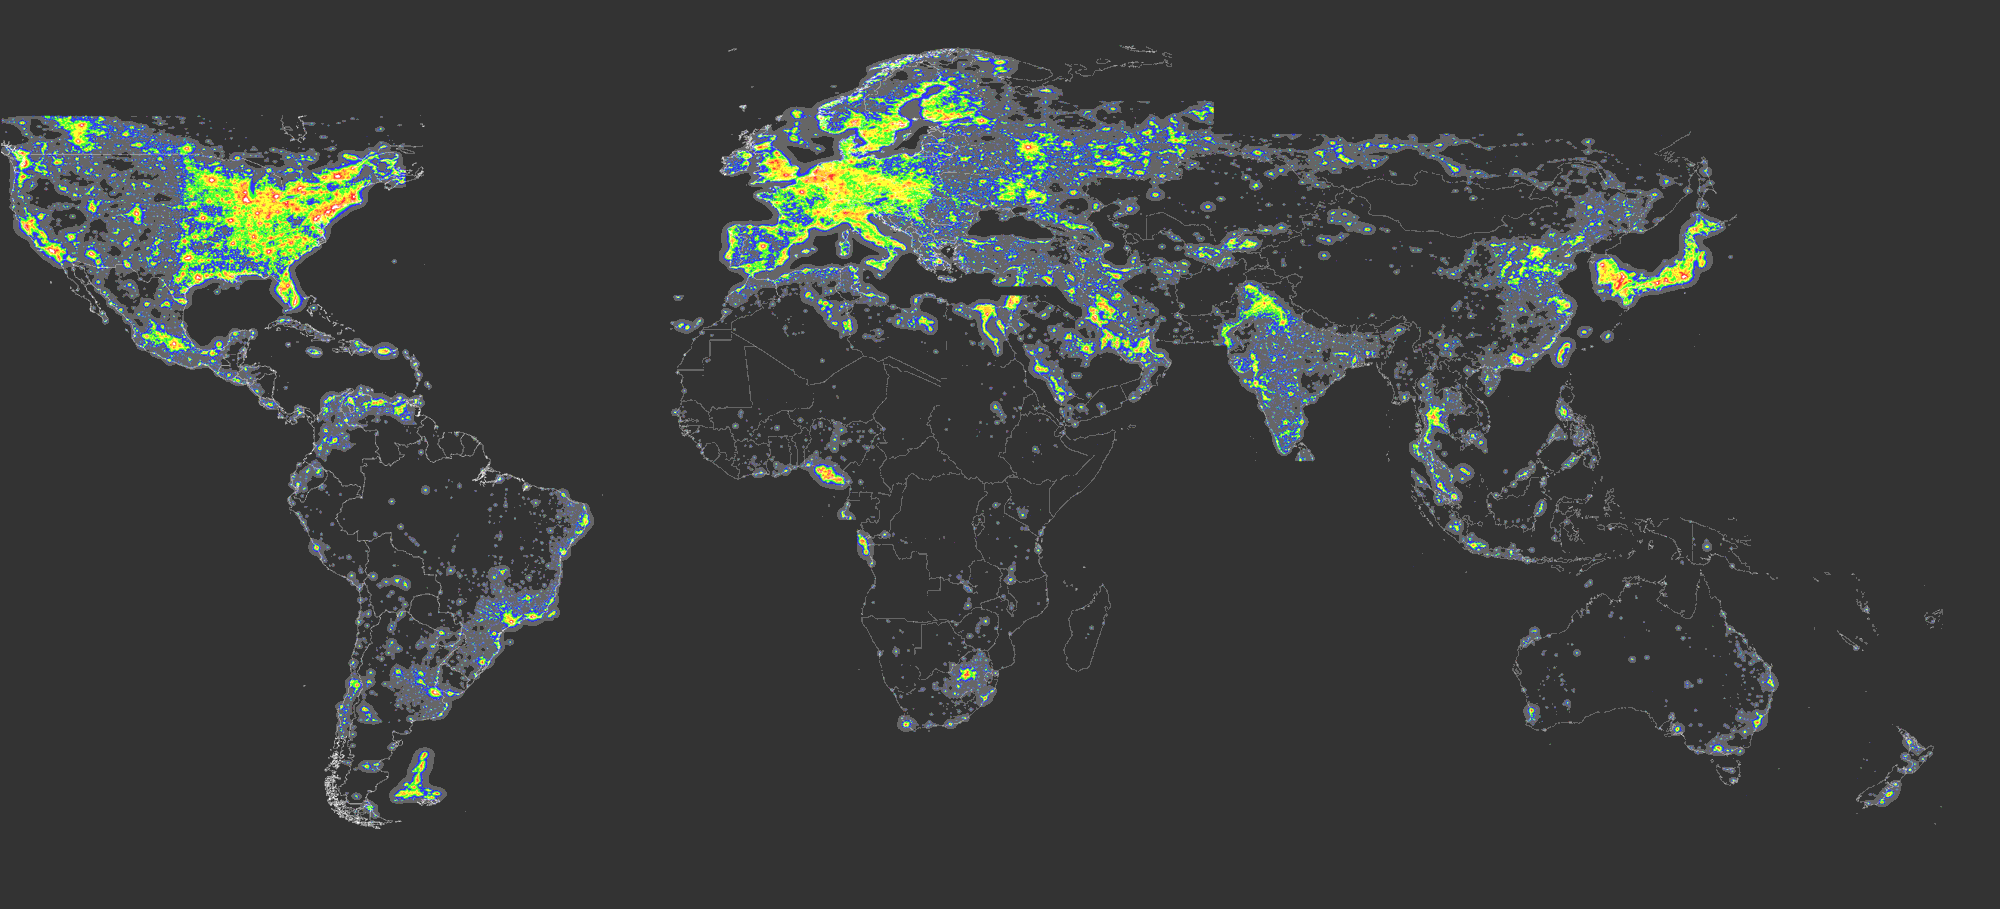 Nouvel atlas mondial de la pollution lumineuse. Ce sont dans les régions les moins peuplées et aussi les moins riches, dont beaucoup sont dans l’hémisphère sud, que l’on trouve les nuits les plus noires de la planète. Les niveaux de pollution lumineuse sont en microcandelas par mètre carré. En noir : inférieur à 1,7 donc ciel noir ; en bleu : entre 1,7 et 14, ce qui se traduit par un horizon dégradé par la clarté ; en vert : entre 14 et 87, soit un ciel dégradé jusqu’au zénith ; en jaune : entre 87 et 688, perte du ciel naturel ; en rouge : entre 688 et 3.000, la Voie lactée n’est plus visible ; en blanc : plus de 3.000, les cônes au fond de l’œil permettant la vision diurne s’activent. © ISTIL